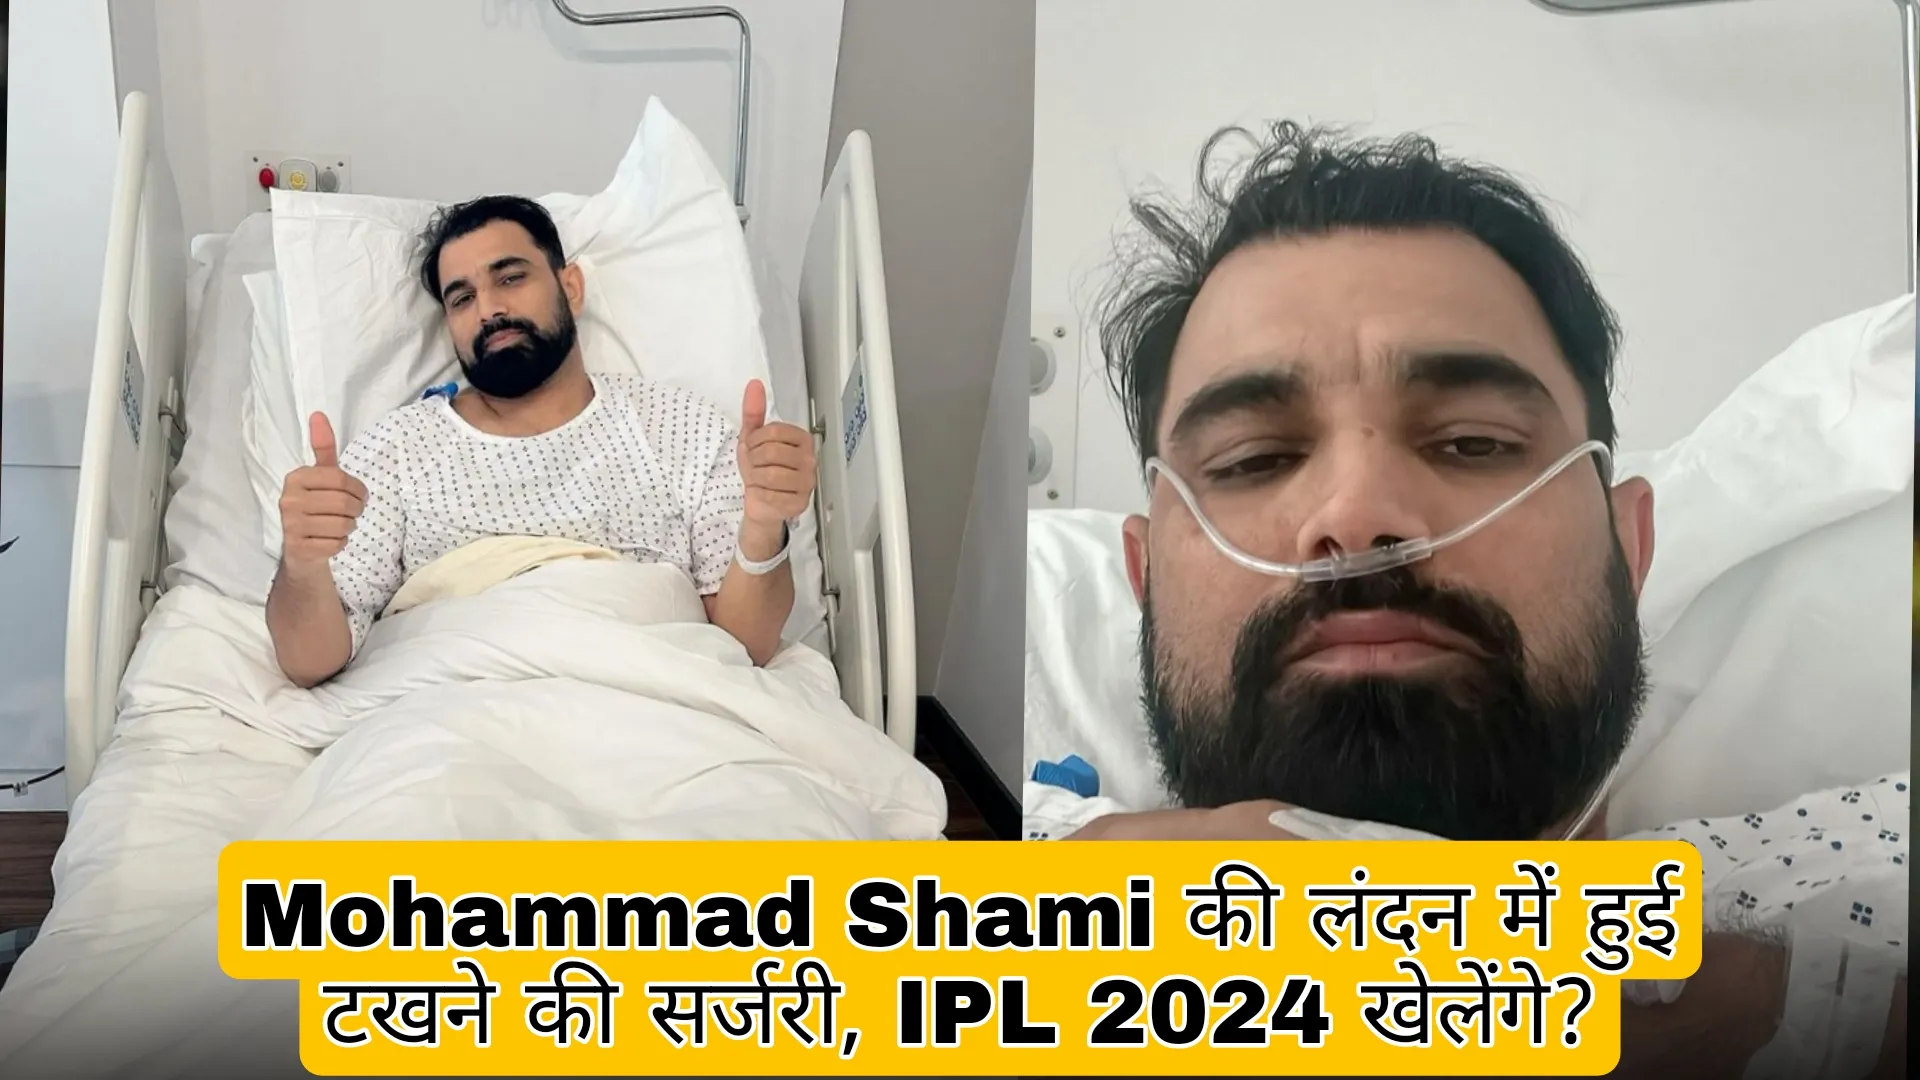 Mohammad Shami Surgery